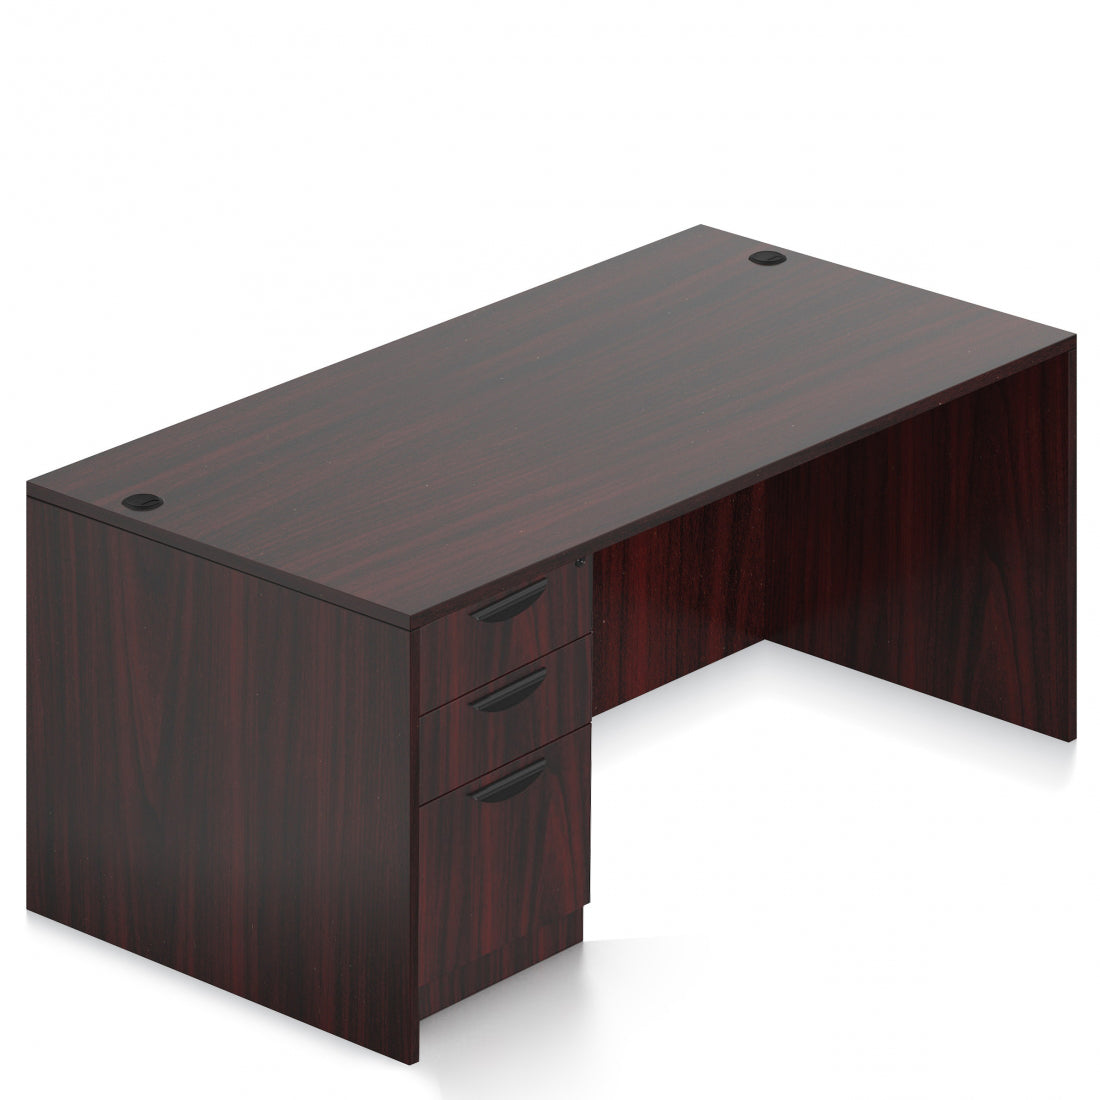 OTG 60"W x 30"D Rectangular Desk - Single Full Pedestal